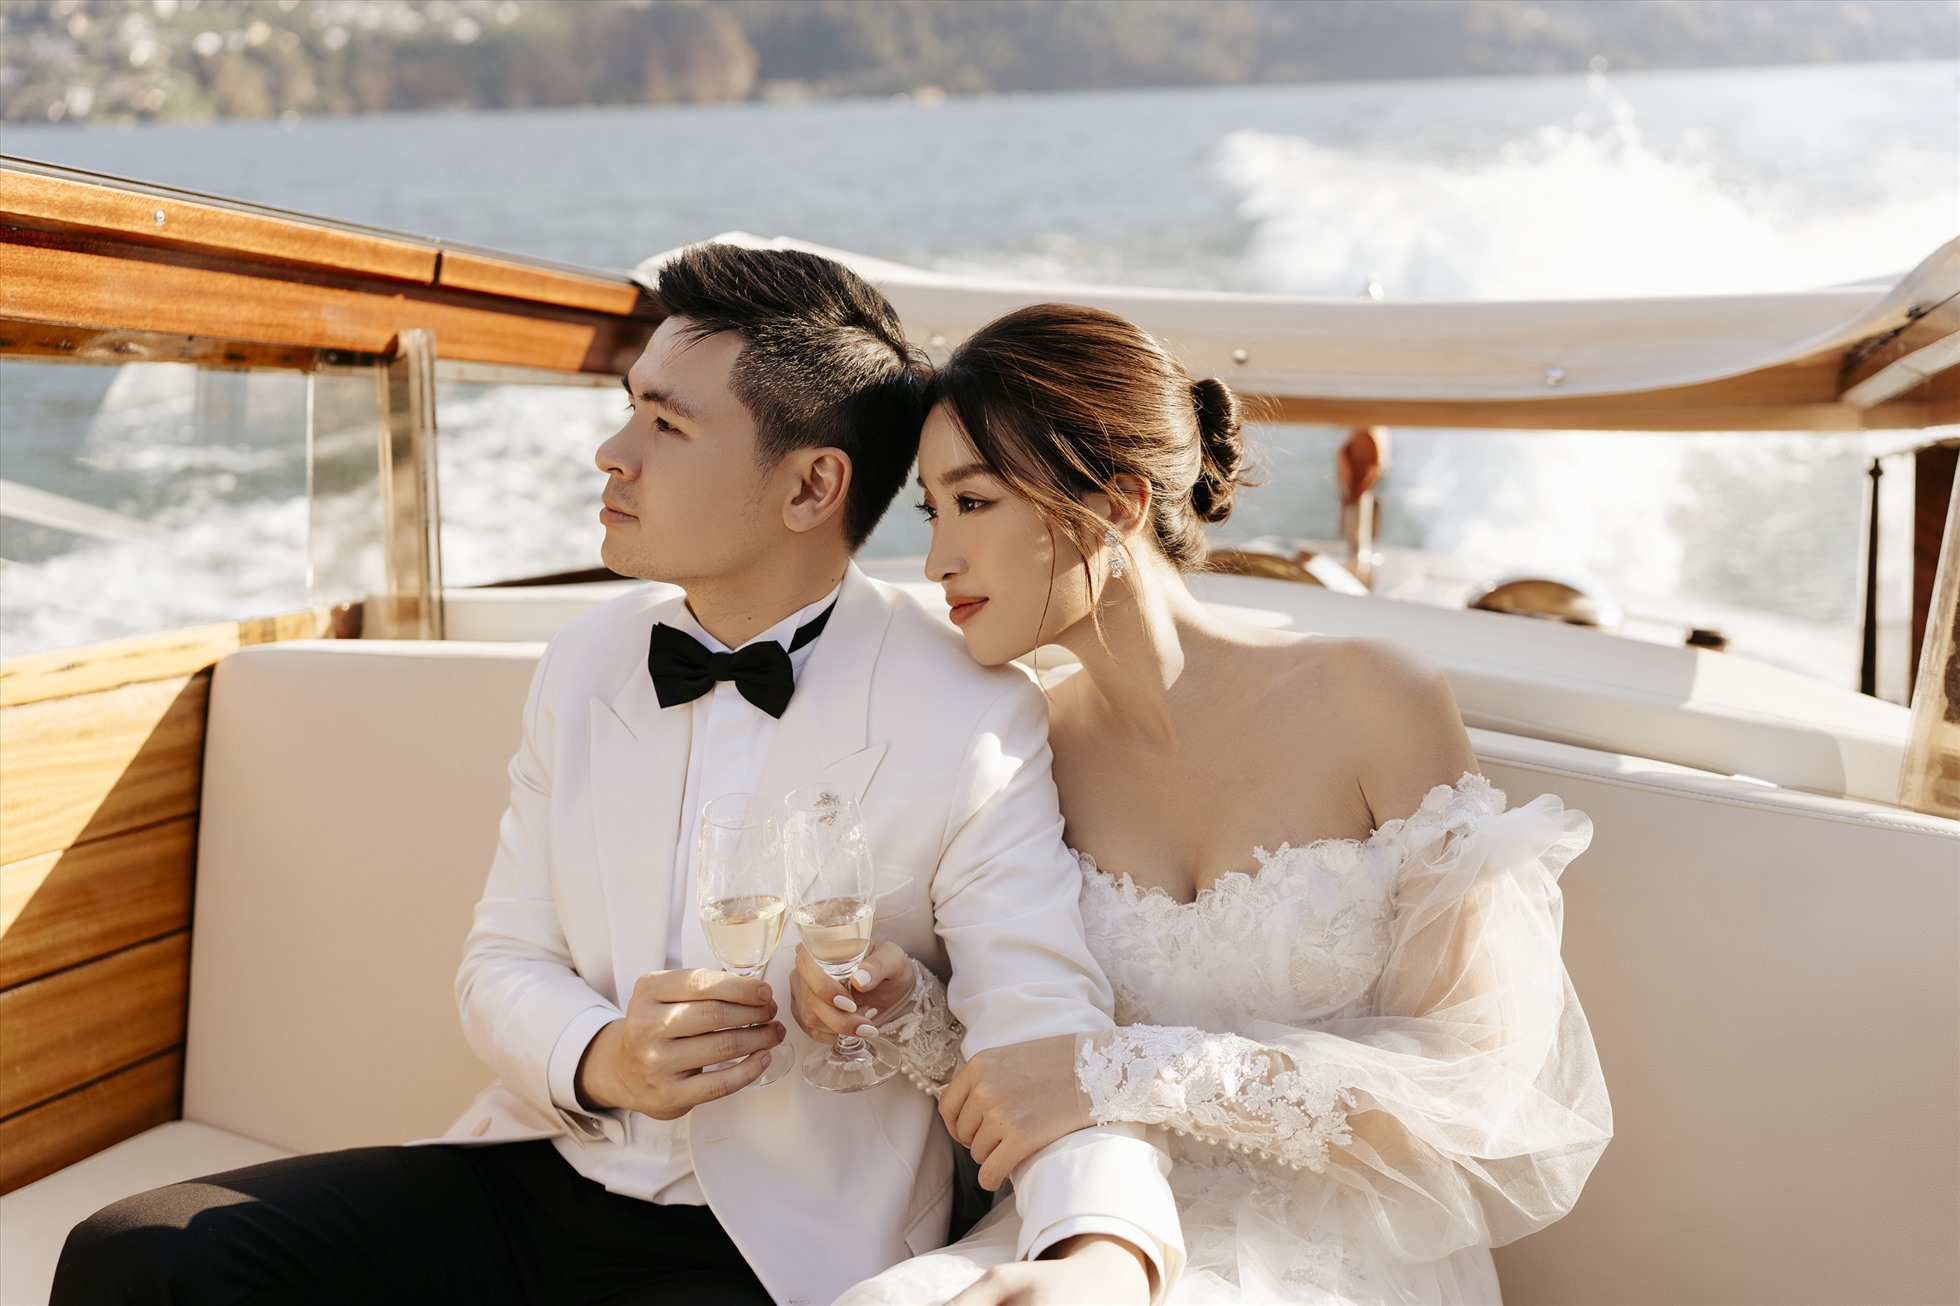 Ngày 13.10, Hoa hậu Đỗ Mỹ Linh bất ngờ tung ảnh cưới đồng thời xác nhận sẽ lên xe hoa cùng bạn trai Đỗ Vinh Quang vào tháng 10.